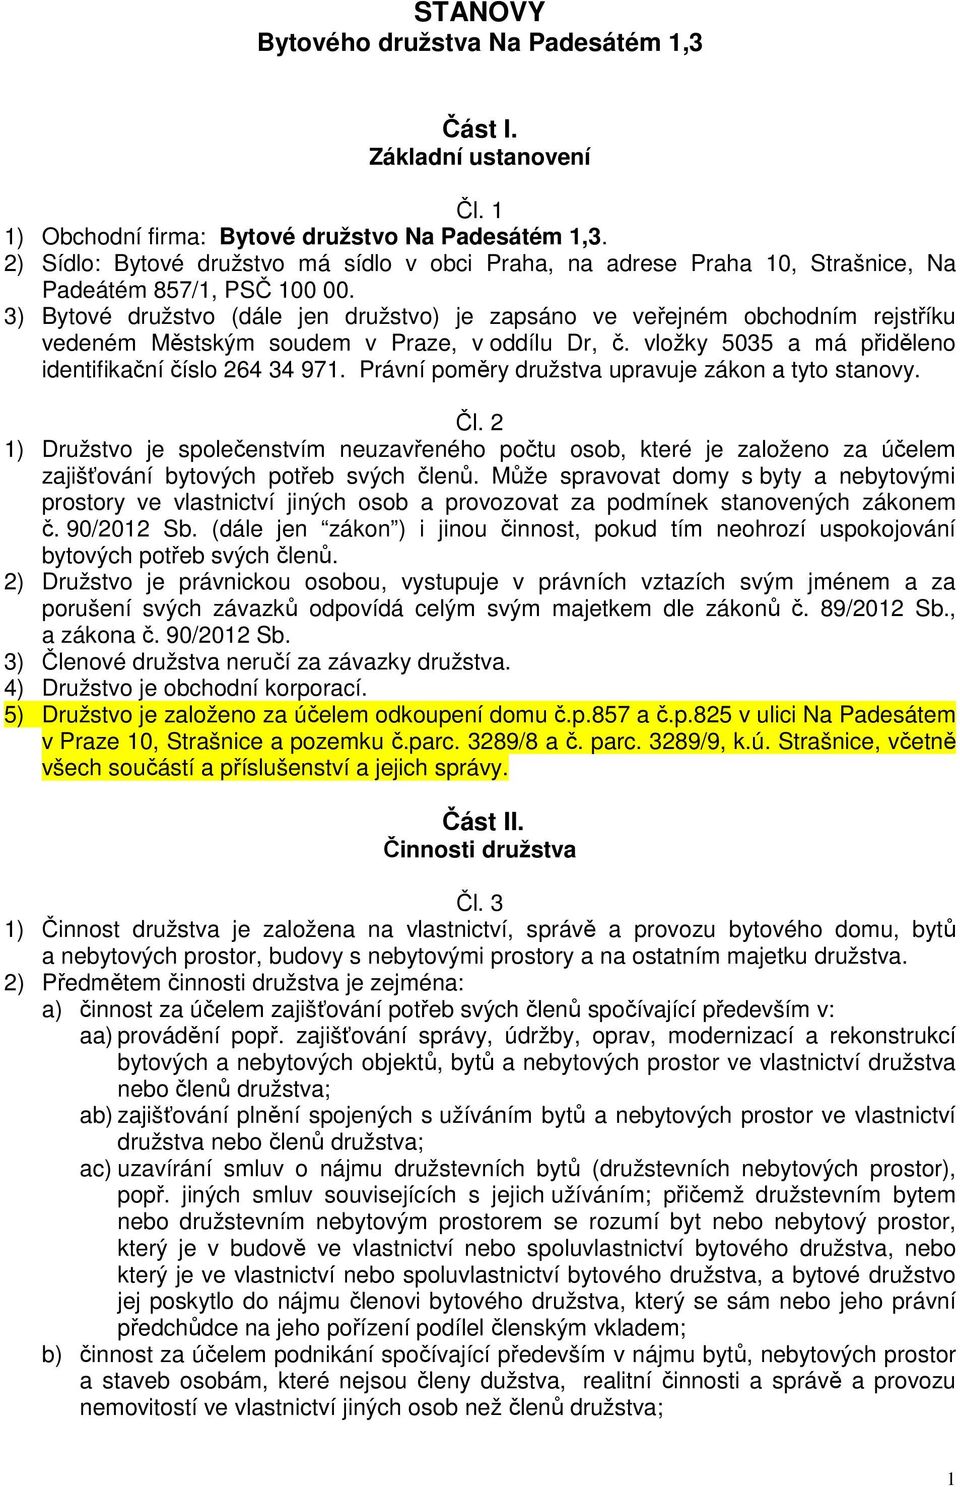 3) Bytové družstvo (dále jen družstvo) je zapsáno ve veřejném obchodním rejstříku vedeném Městským soudem v Praze, v oddílu Dr, č. vložky 5035 a má přiděleno identifikační číslo 264 34 971.